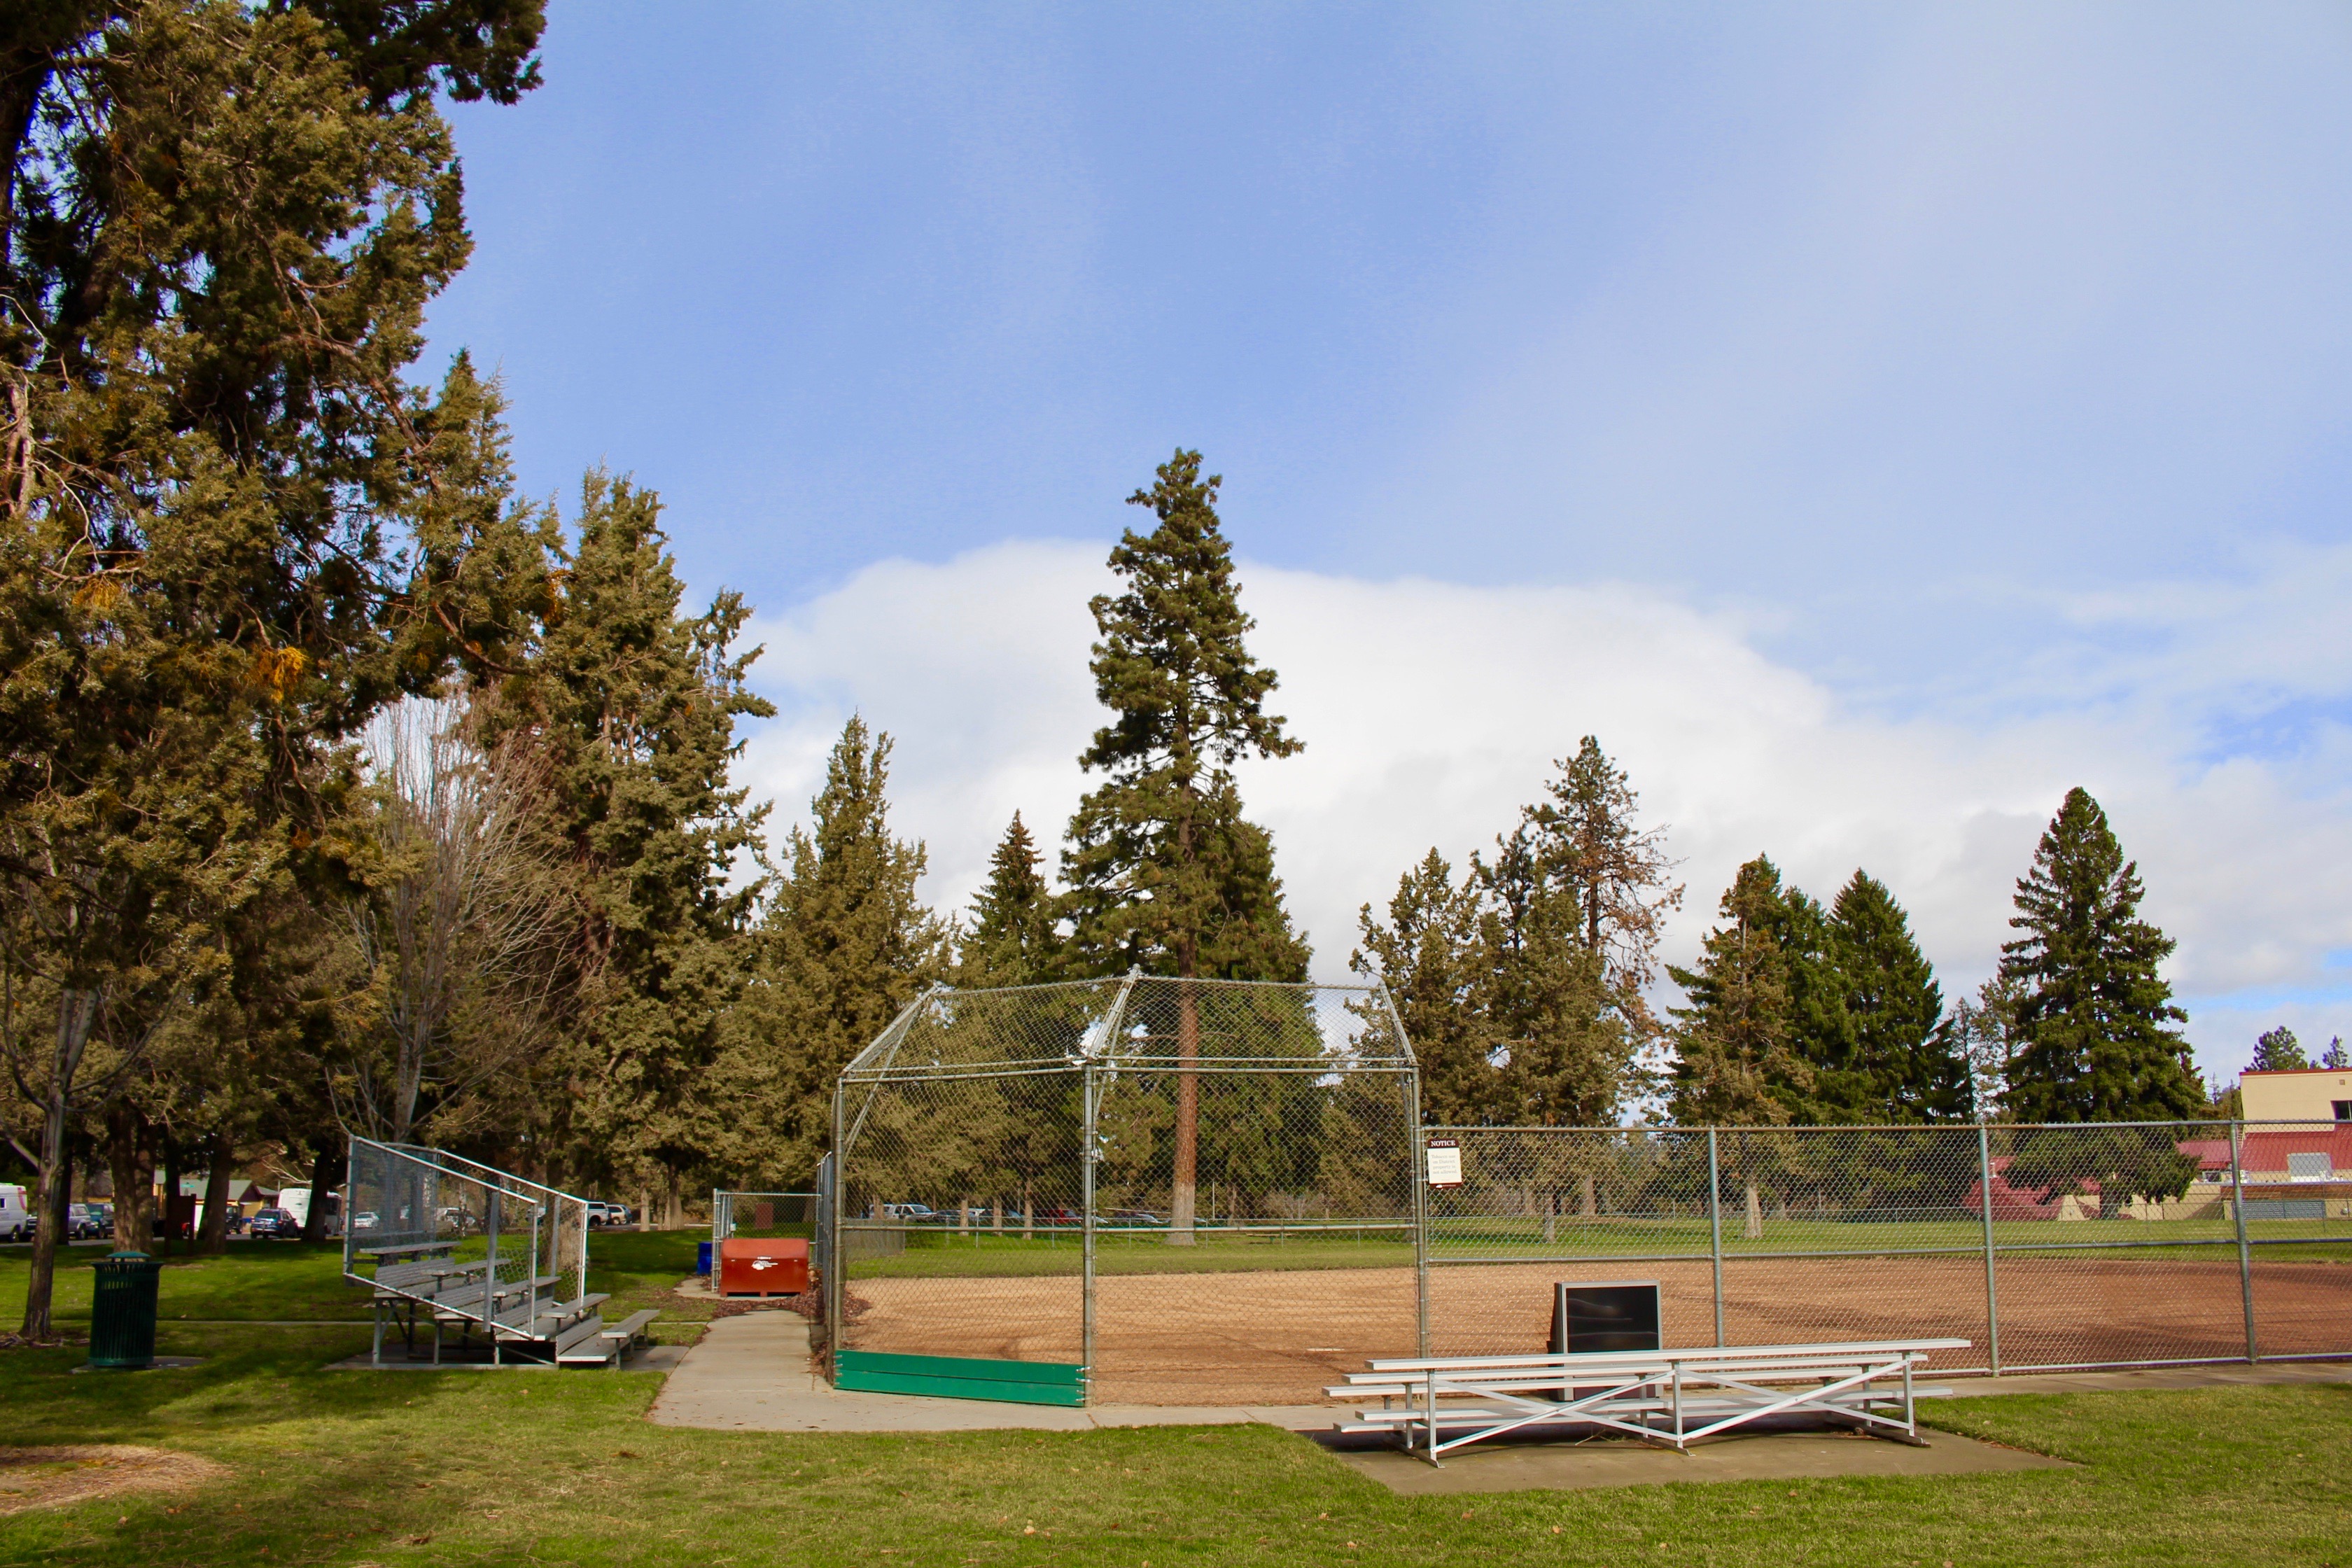 the softball field at juniper park